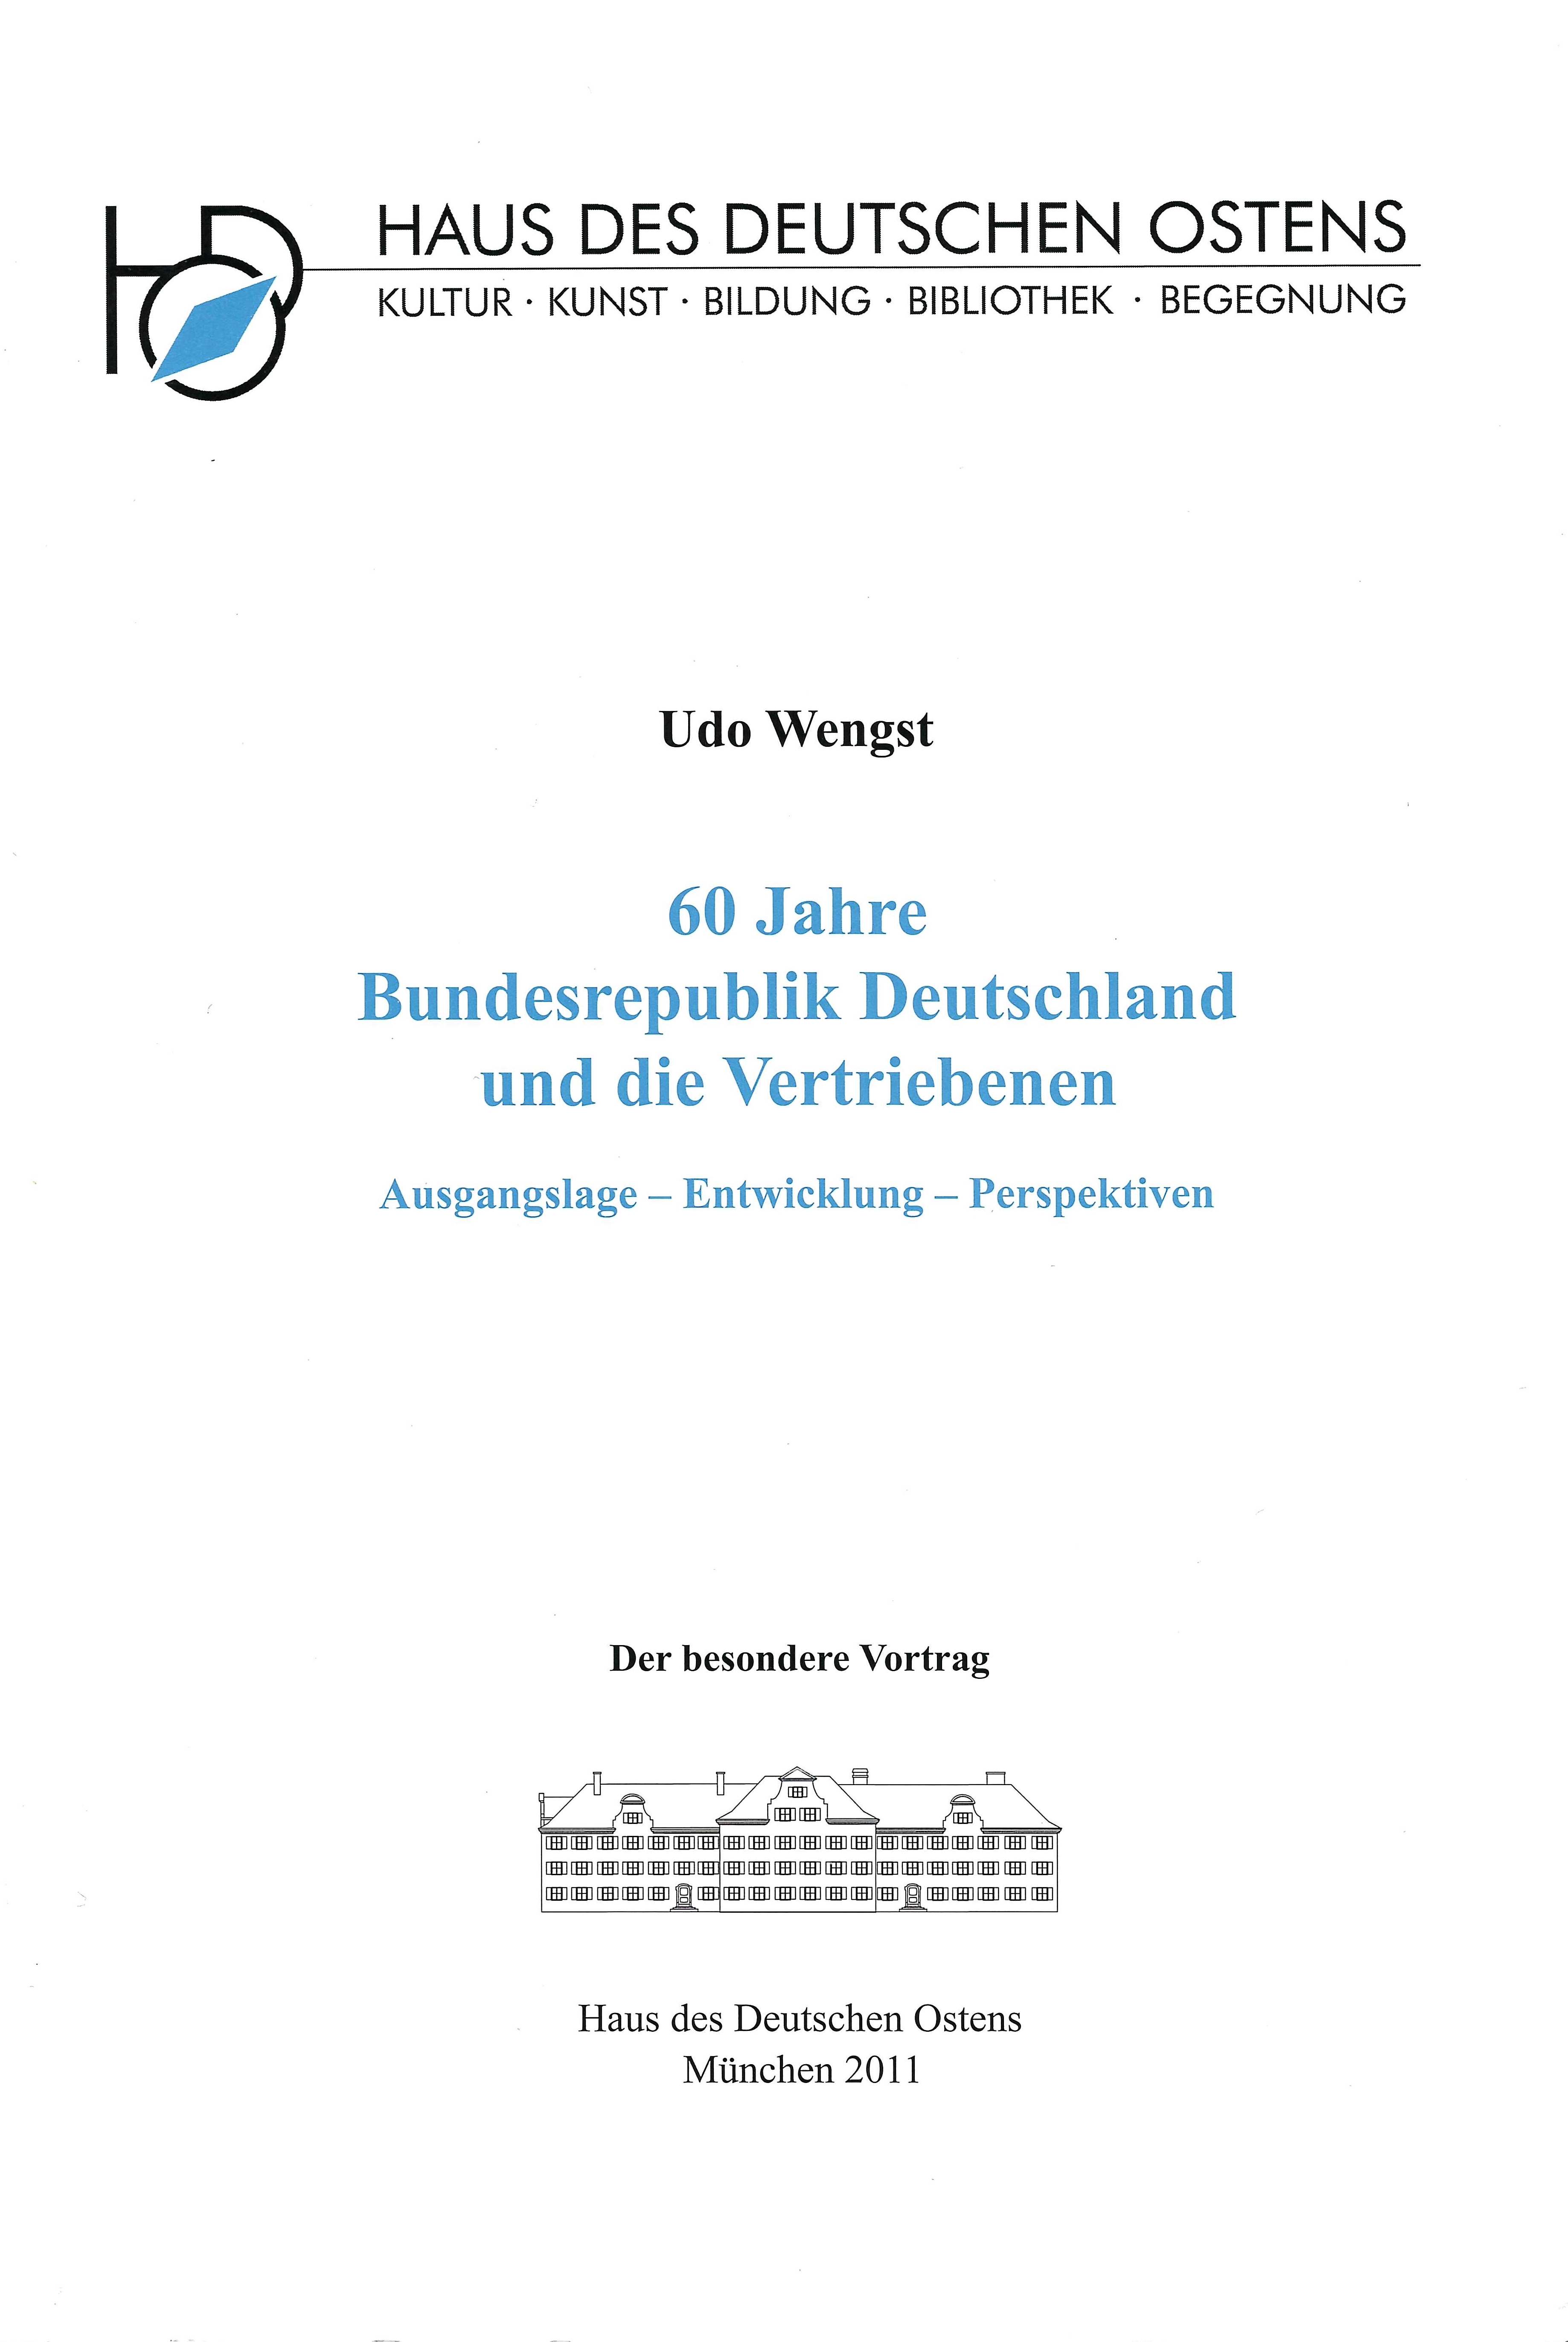 Udo Wengst: 60 Jahre Bundesrepublik Deutschland und die Vertriebenen